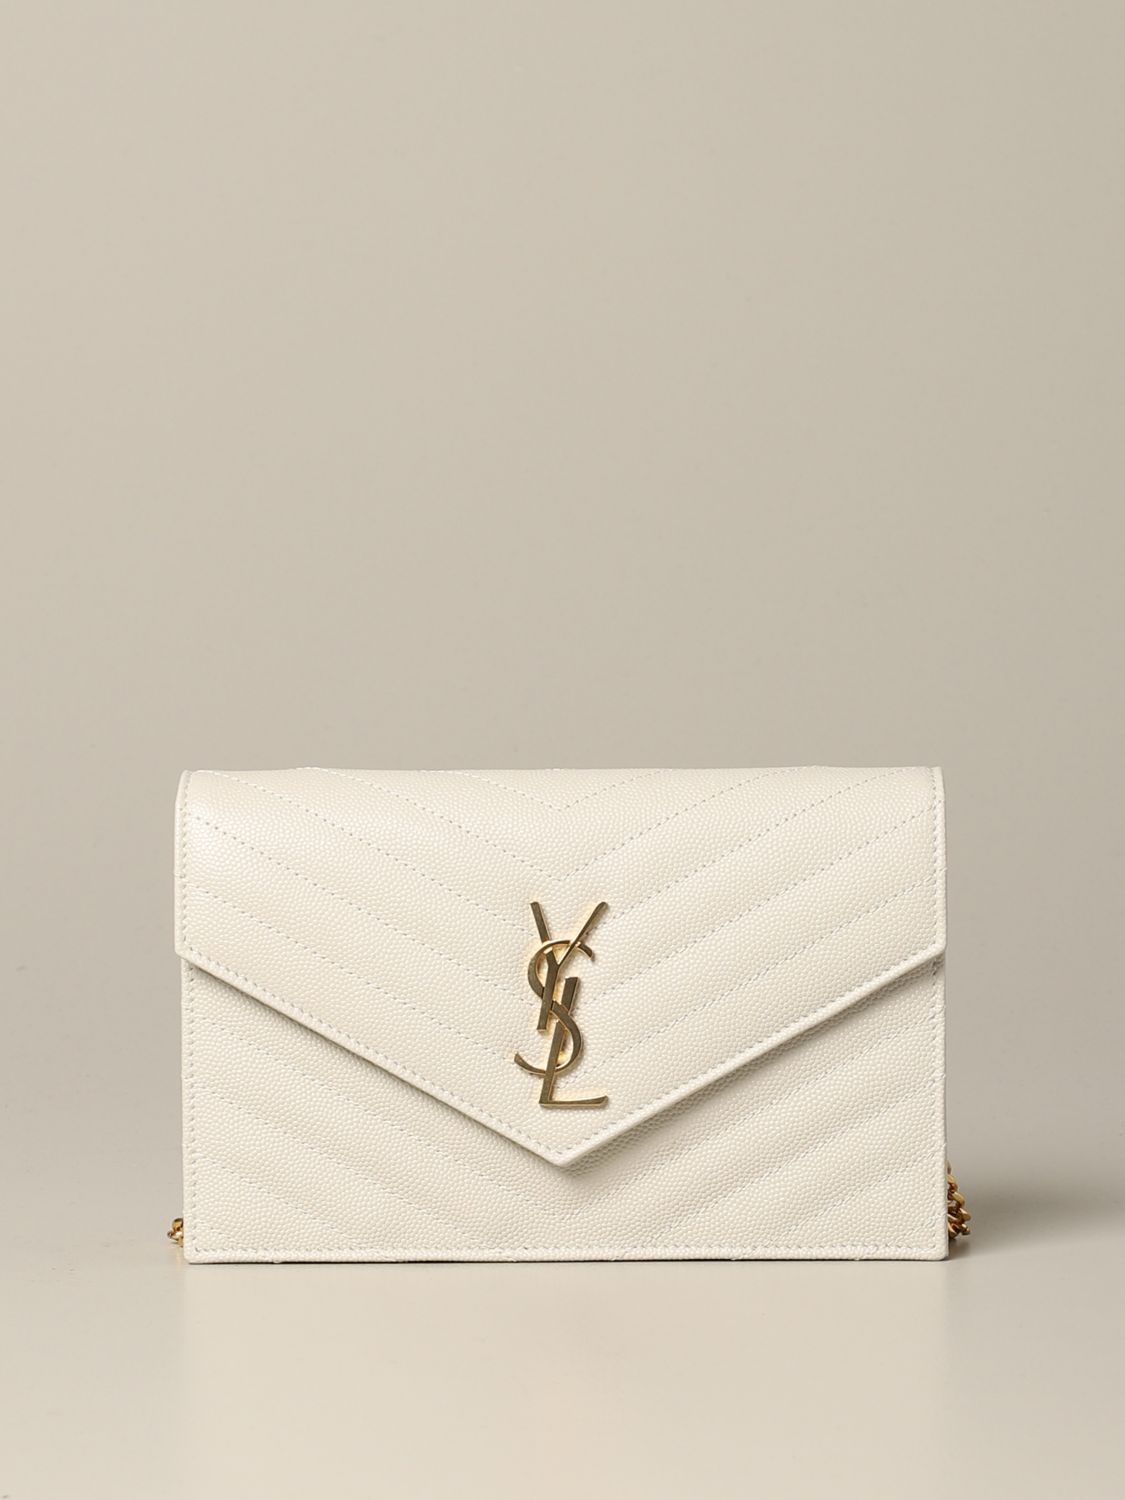 Mini sac à main Saint Laurent: Sac Monogram envelope chain wallet Saint Laurent en cuir grain de poudre jaune crème 1